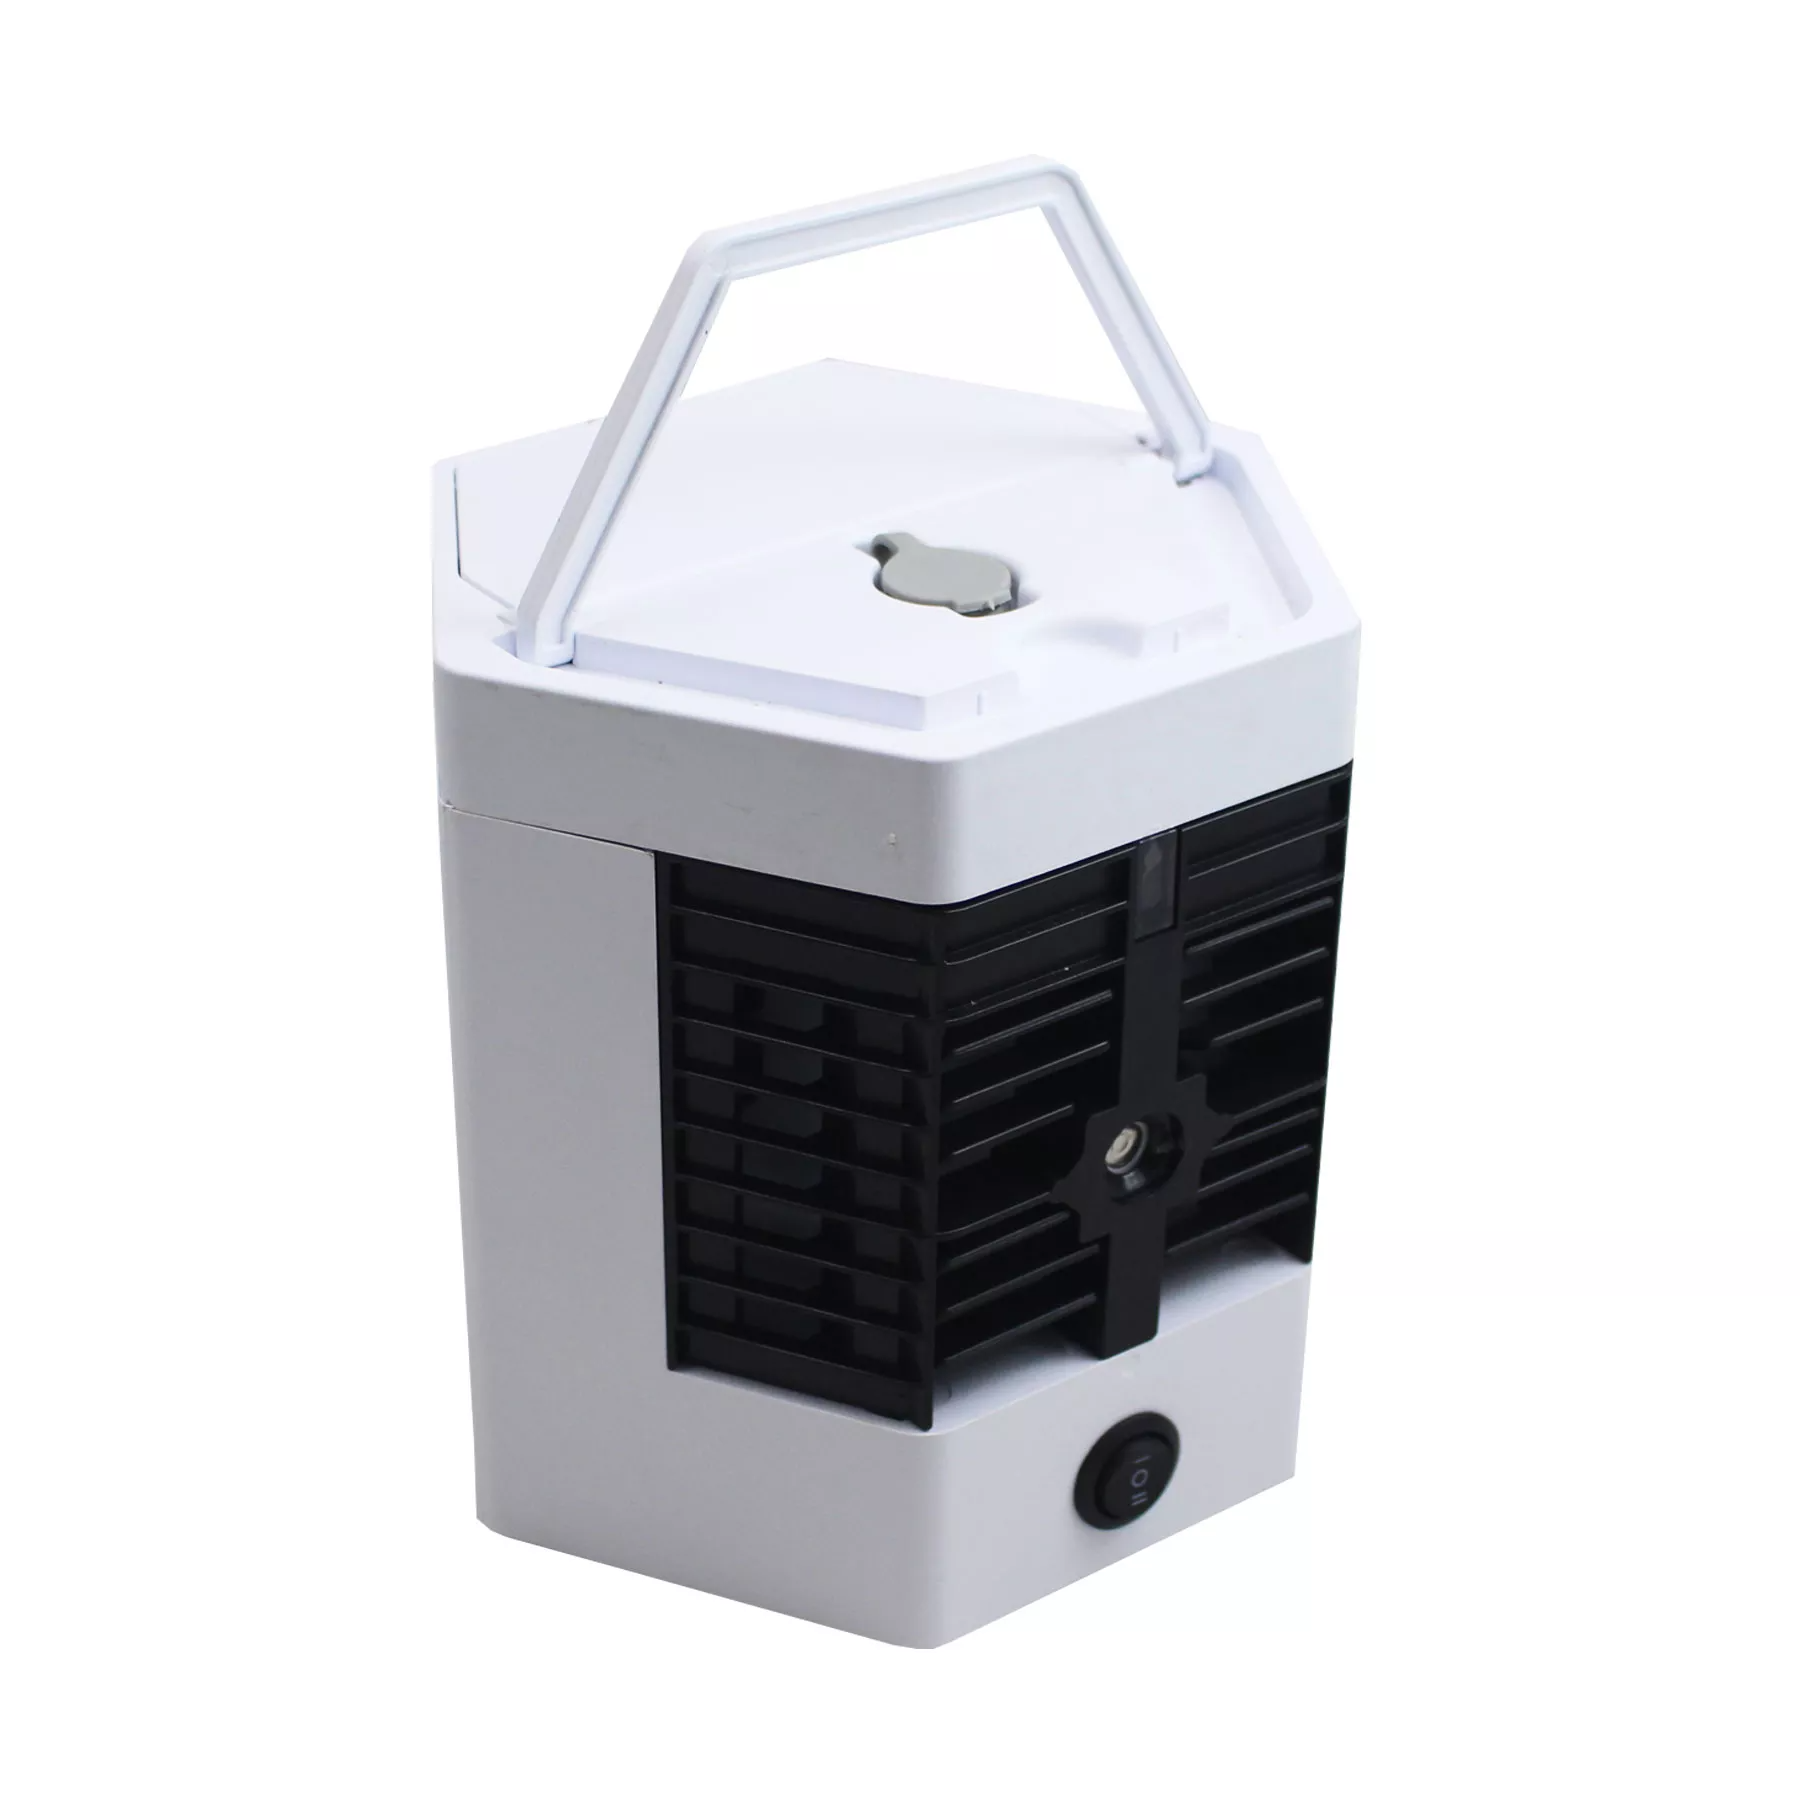 Ventilator, racitor si purificator de aer, alb/gri, alimentare cu cablu